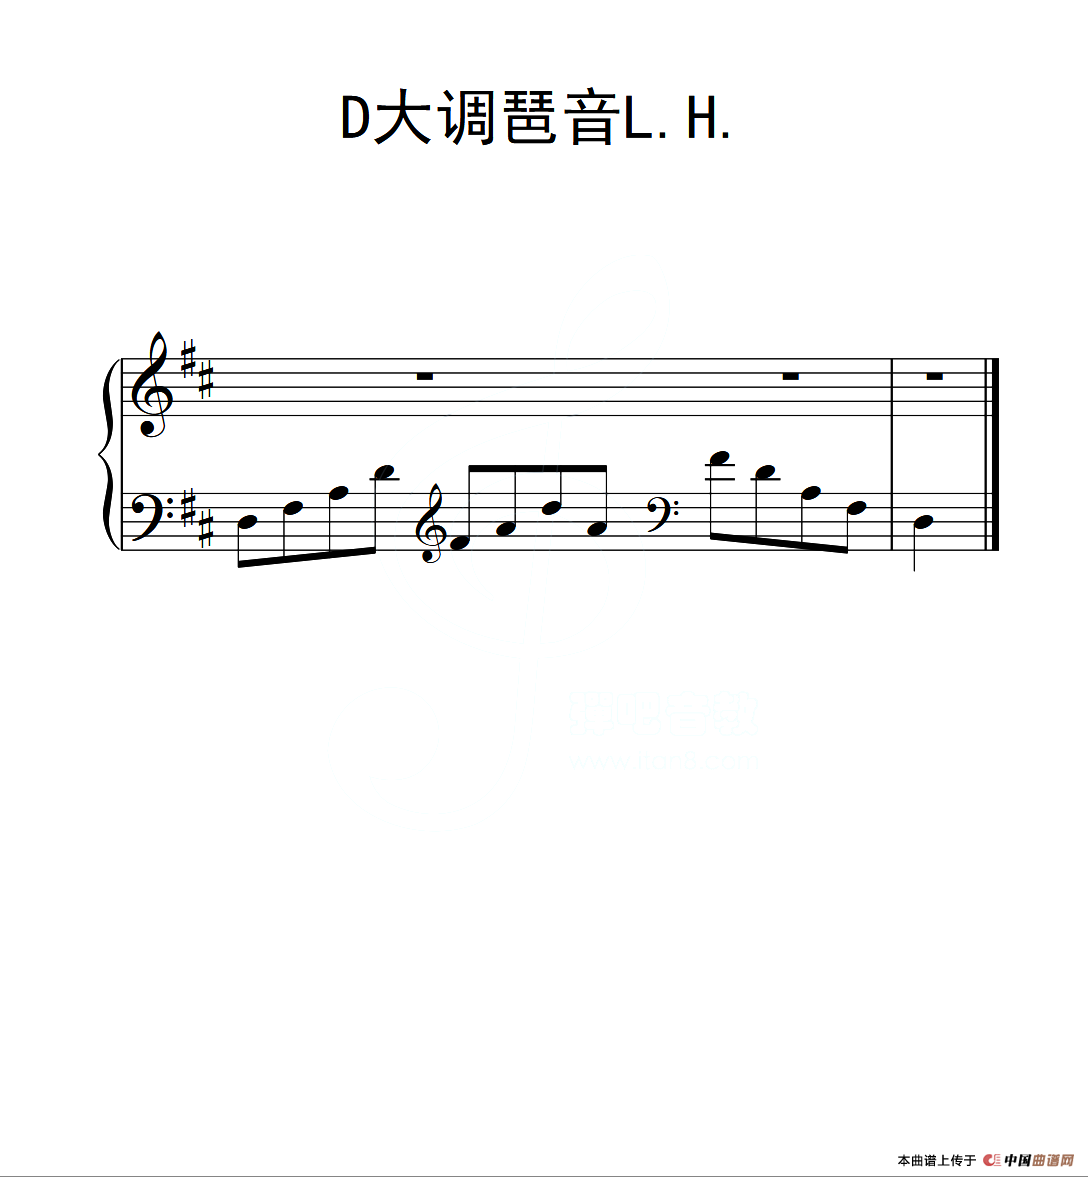 第二级 d大调琶音l h(中国音乐学院钢琴考级作品1~6级)图片